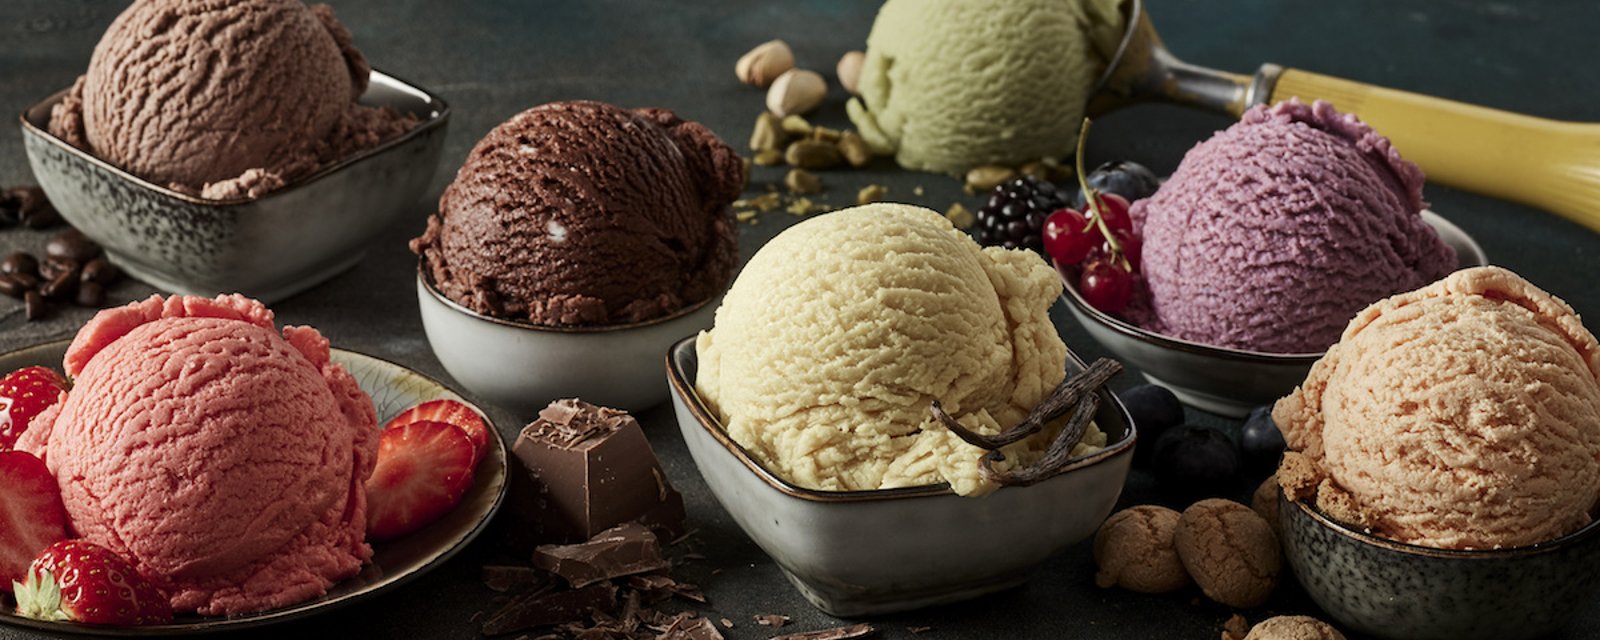 Votre préférence en matière de crème glacée peut nous révéler votre personnalité